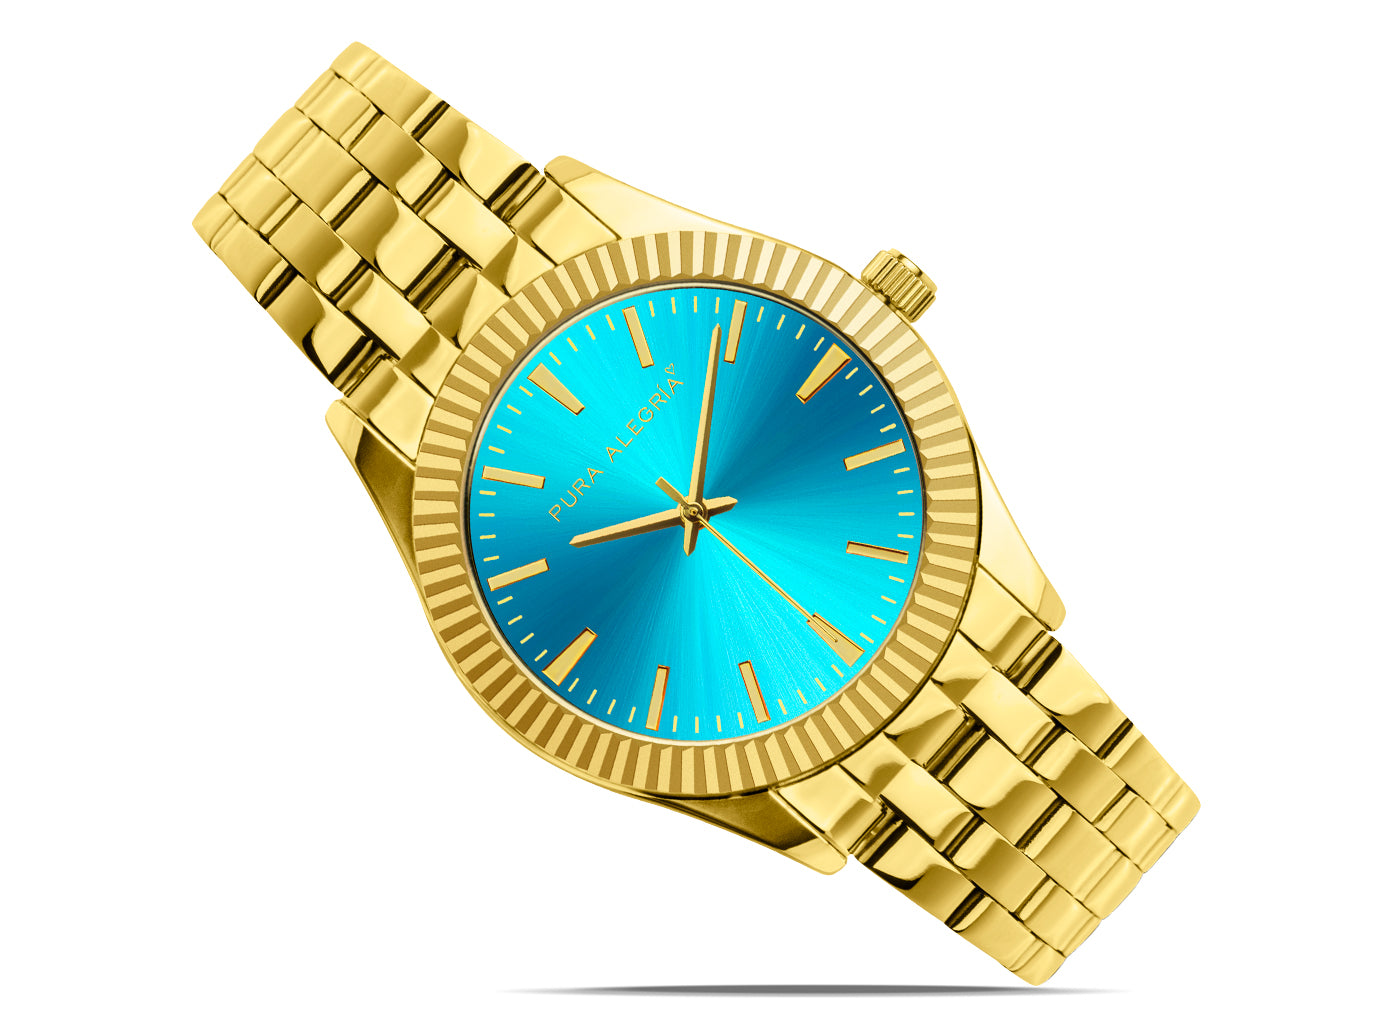  Relojes para mujer, reloj de pulsera, reloj dorado de